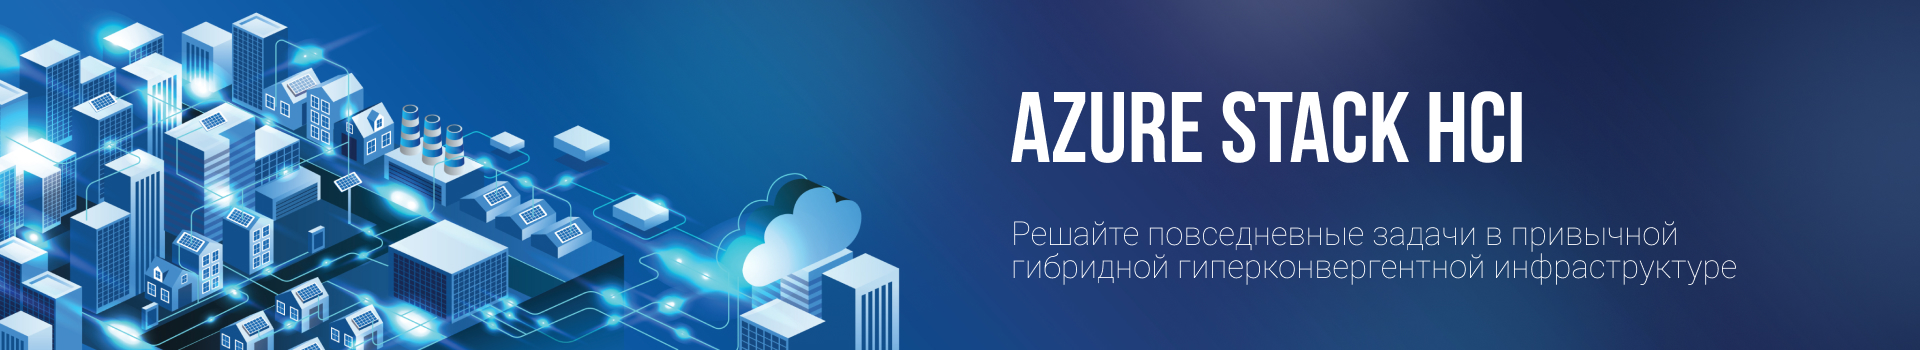 Azure Stack HCI: Решайте повседневные задачи в привычной гибридной гиперконвергентной инфраструктуре